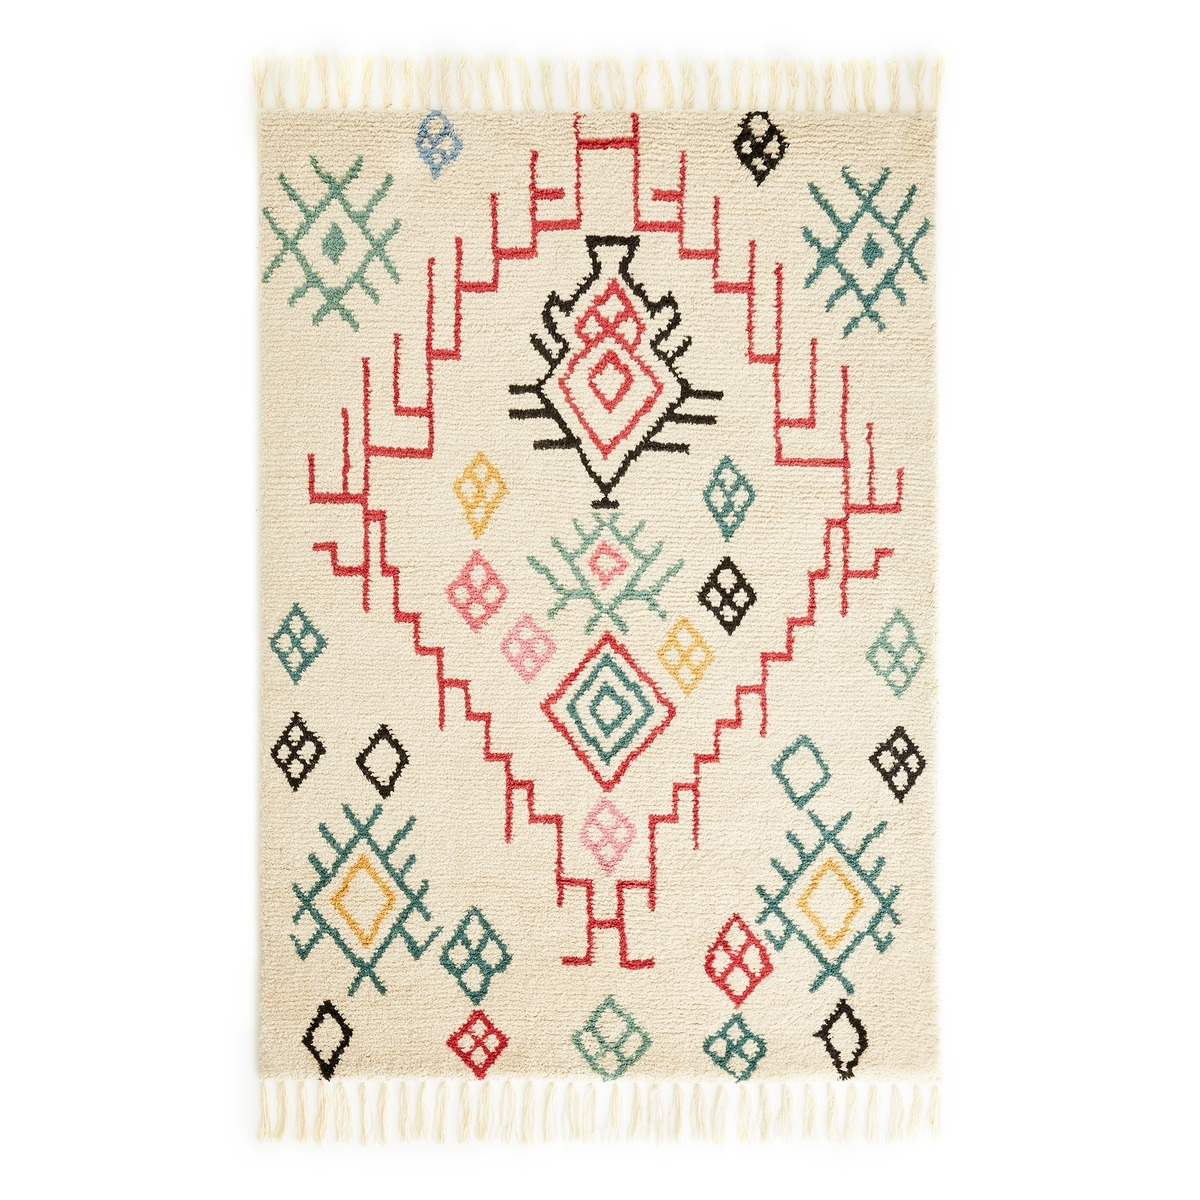 Adza Berber-Style Fringed 100% Wool Rug - image 1